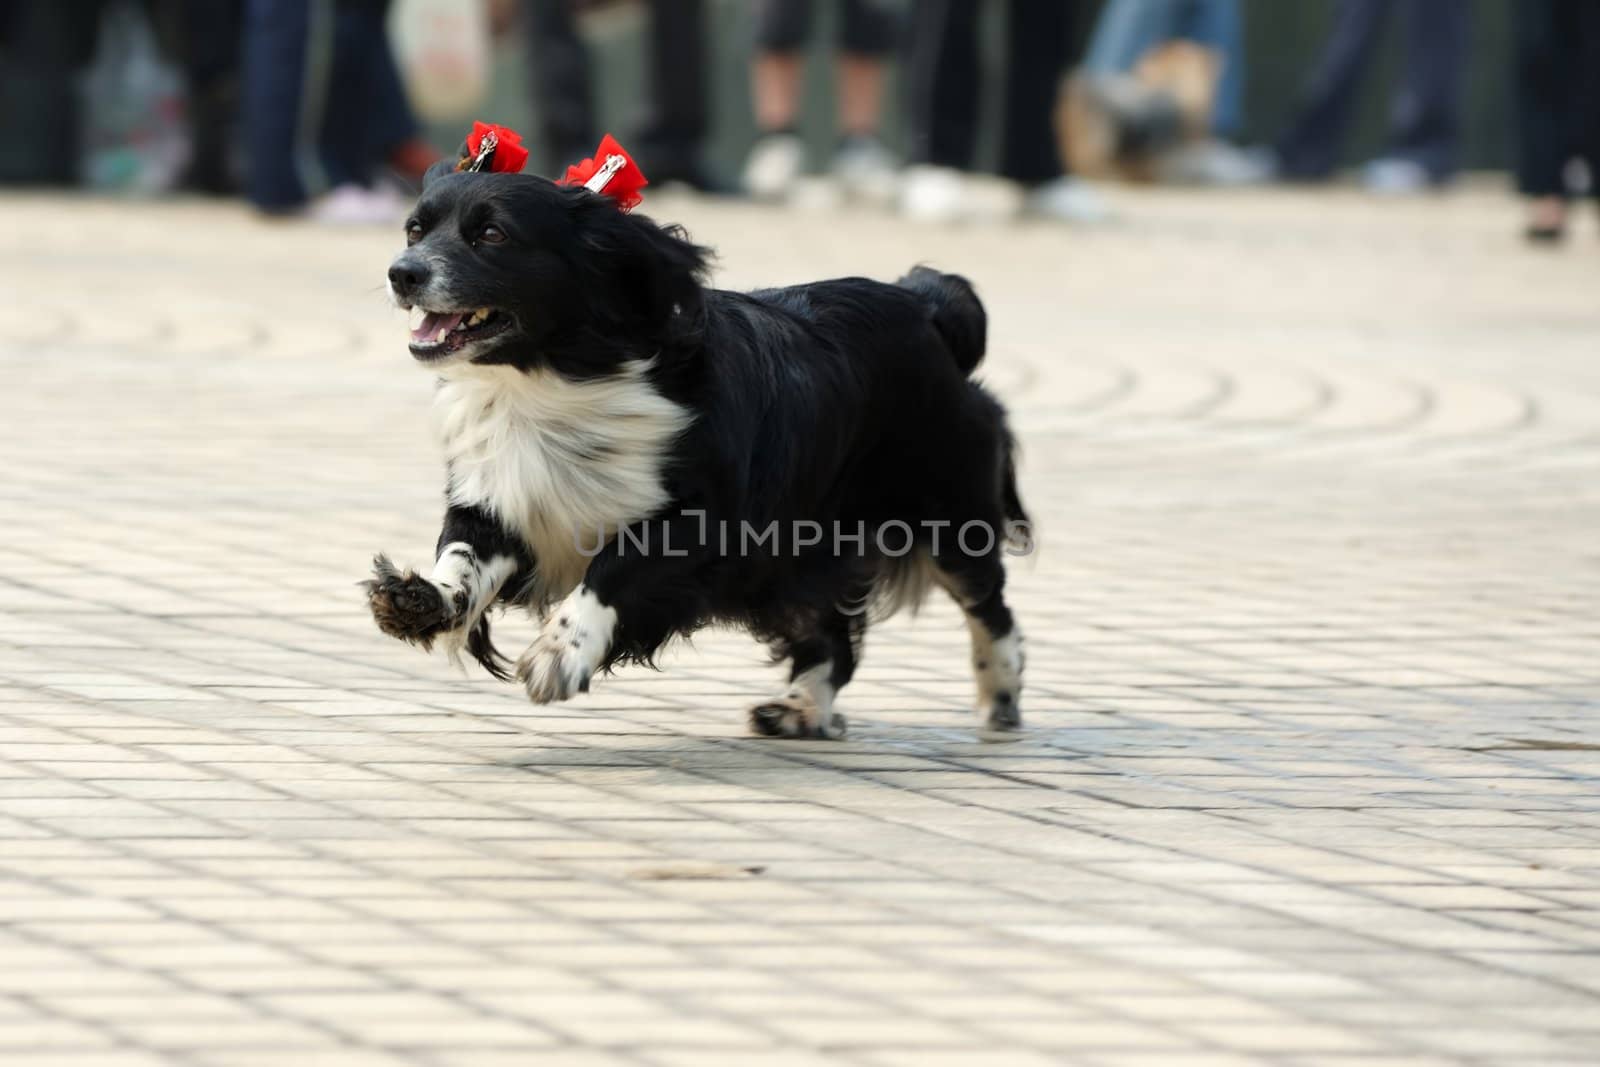 Lovely little dog running on the ground